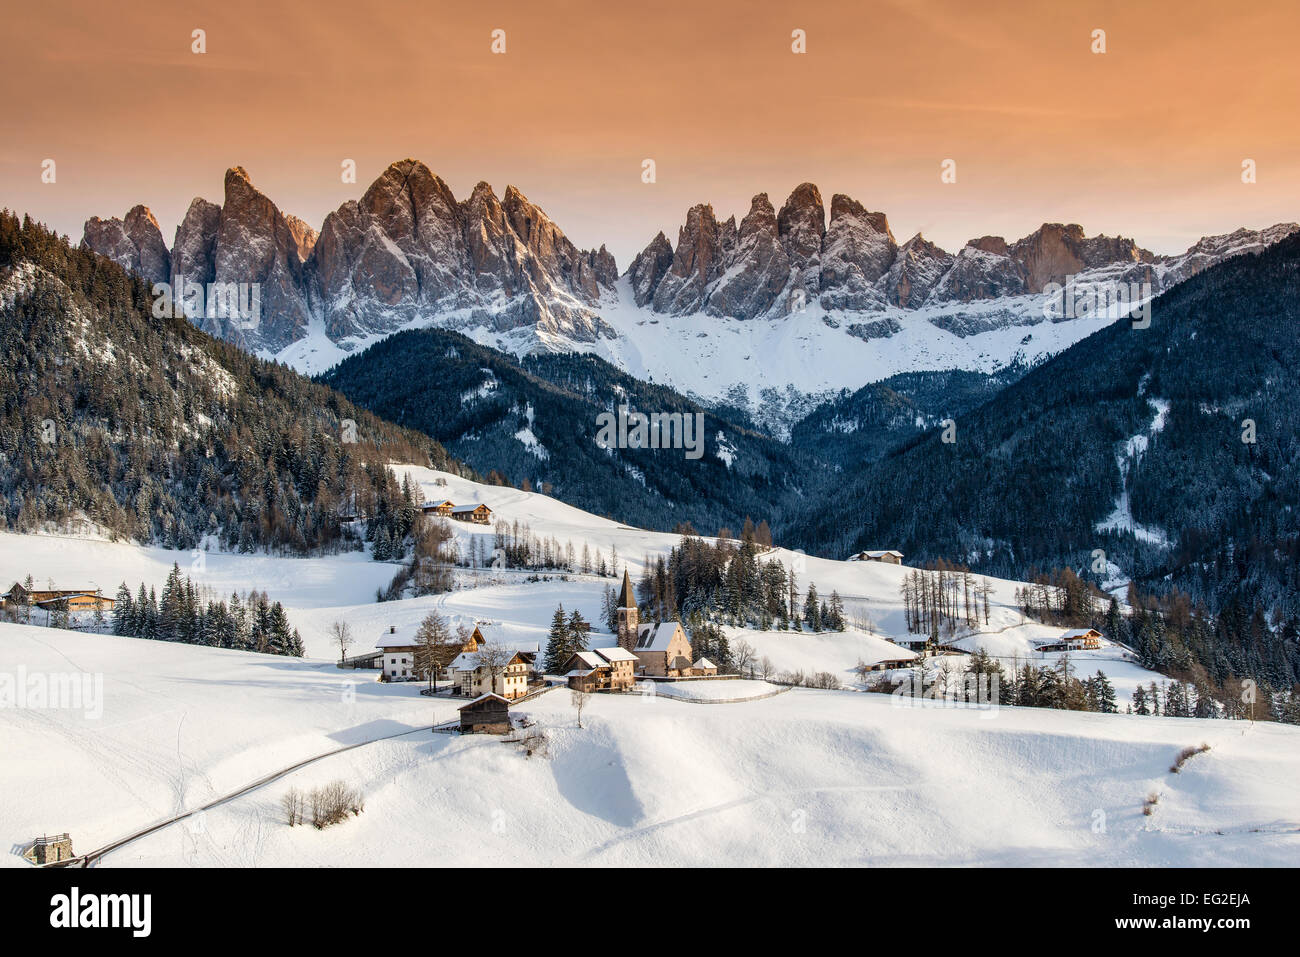 Dans Vilnoss coucher du soleil d'hiver pittoresque ou Val di Funes avec Puez-Geisler derrière, l'Alto Adige Dolomites - Tyrol du Sud, Italie Banque D'Images